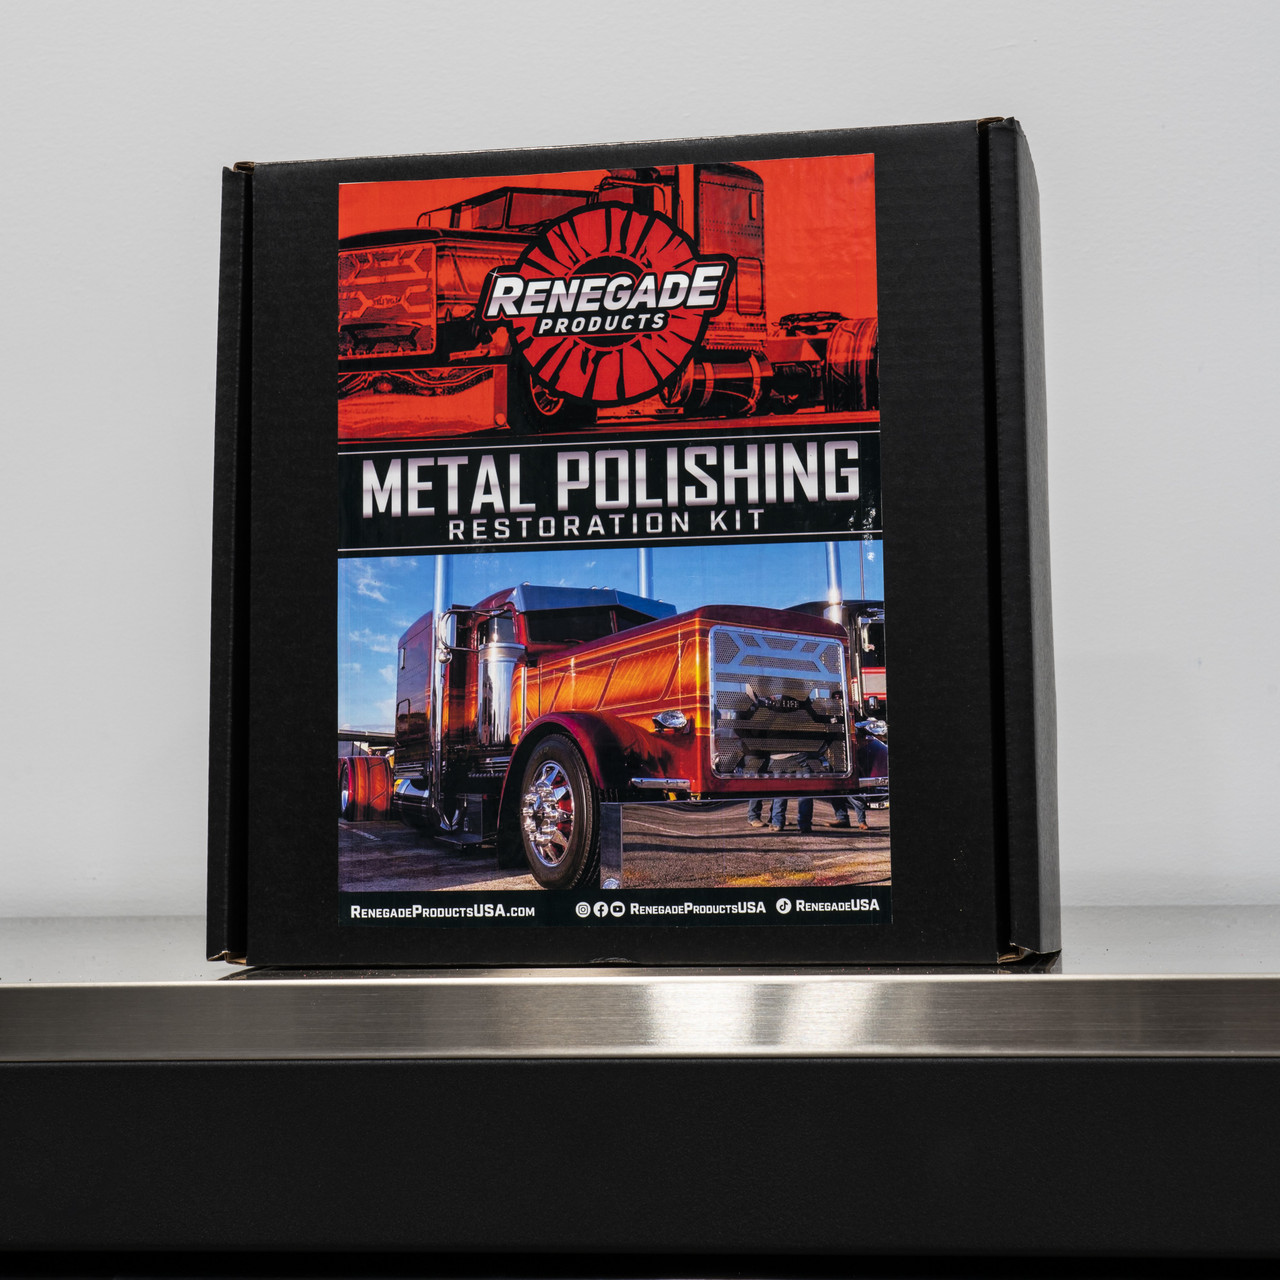 Renegade Metal Polishing Kit with Flex 7 Angle Grinder